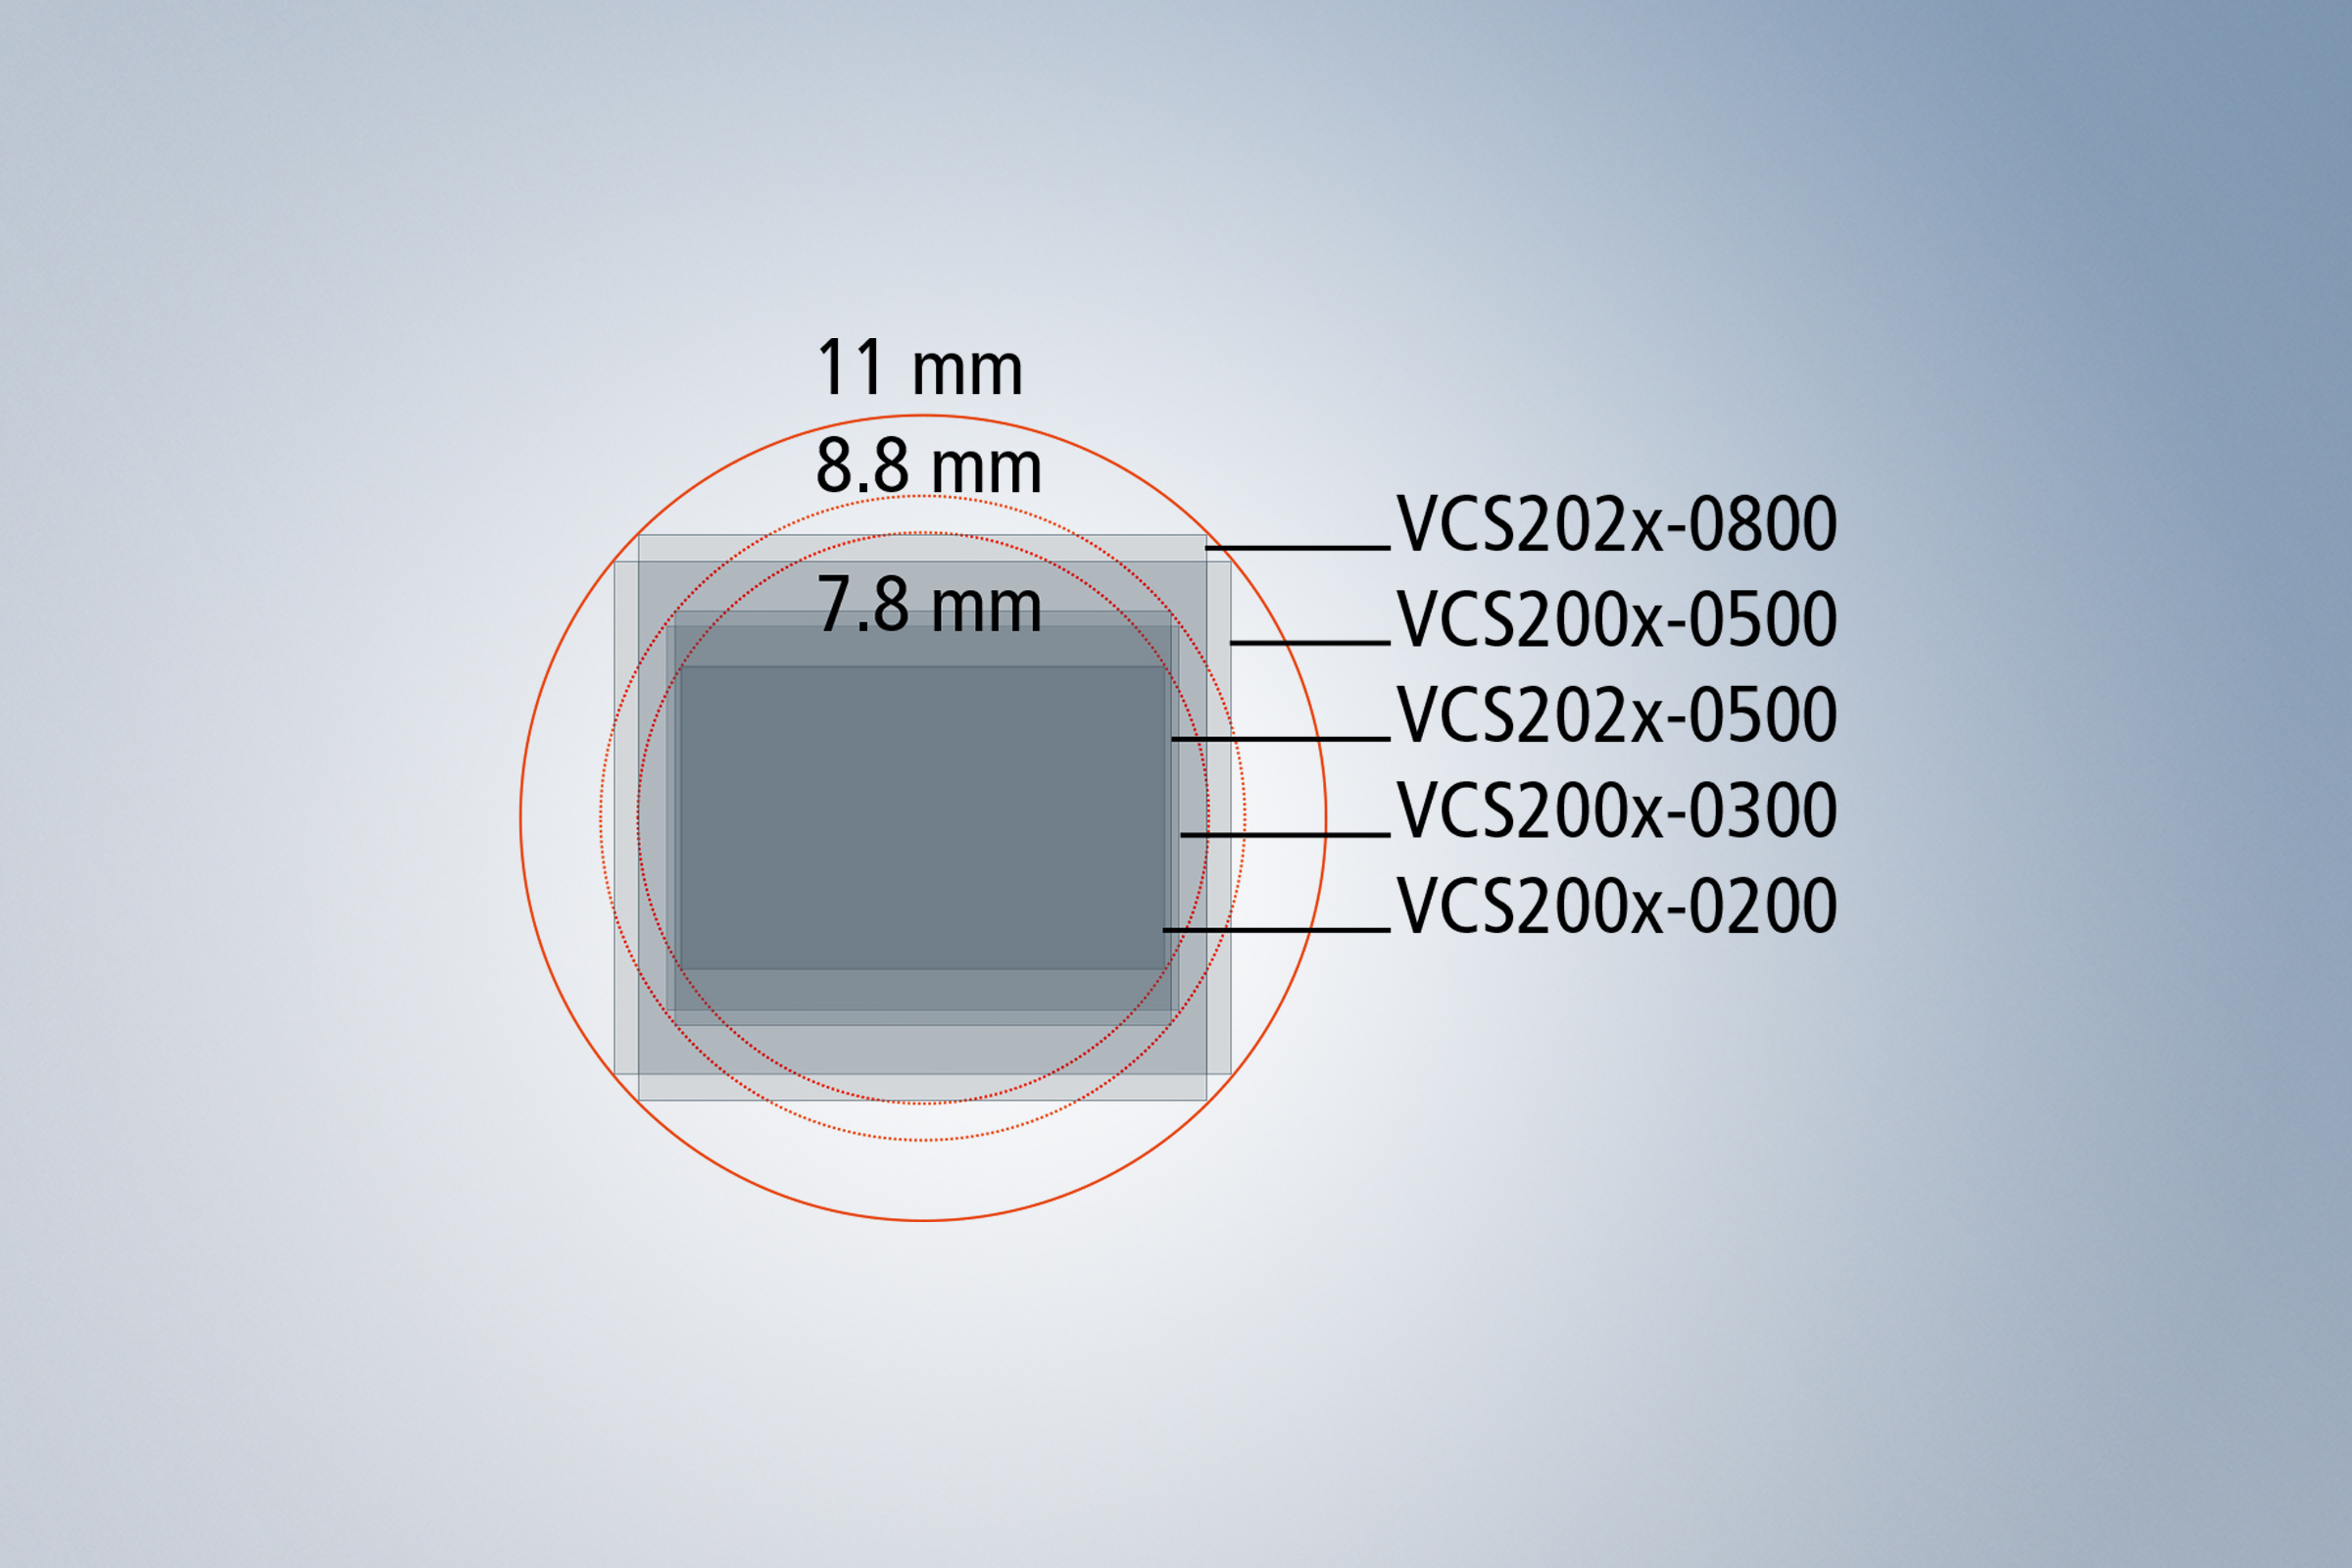 使用 VCS8 和目前的图像传感器最高可以实现 2000 万像素的分辨率 